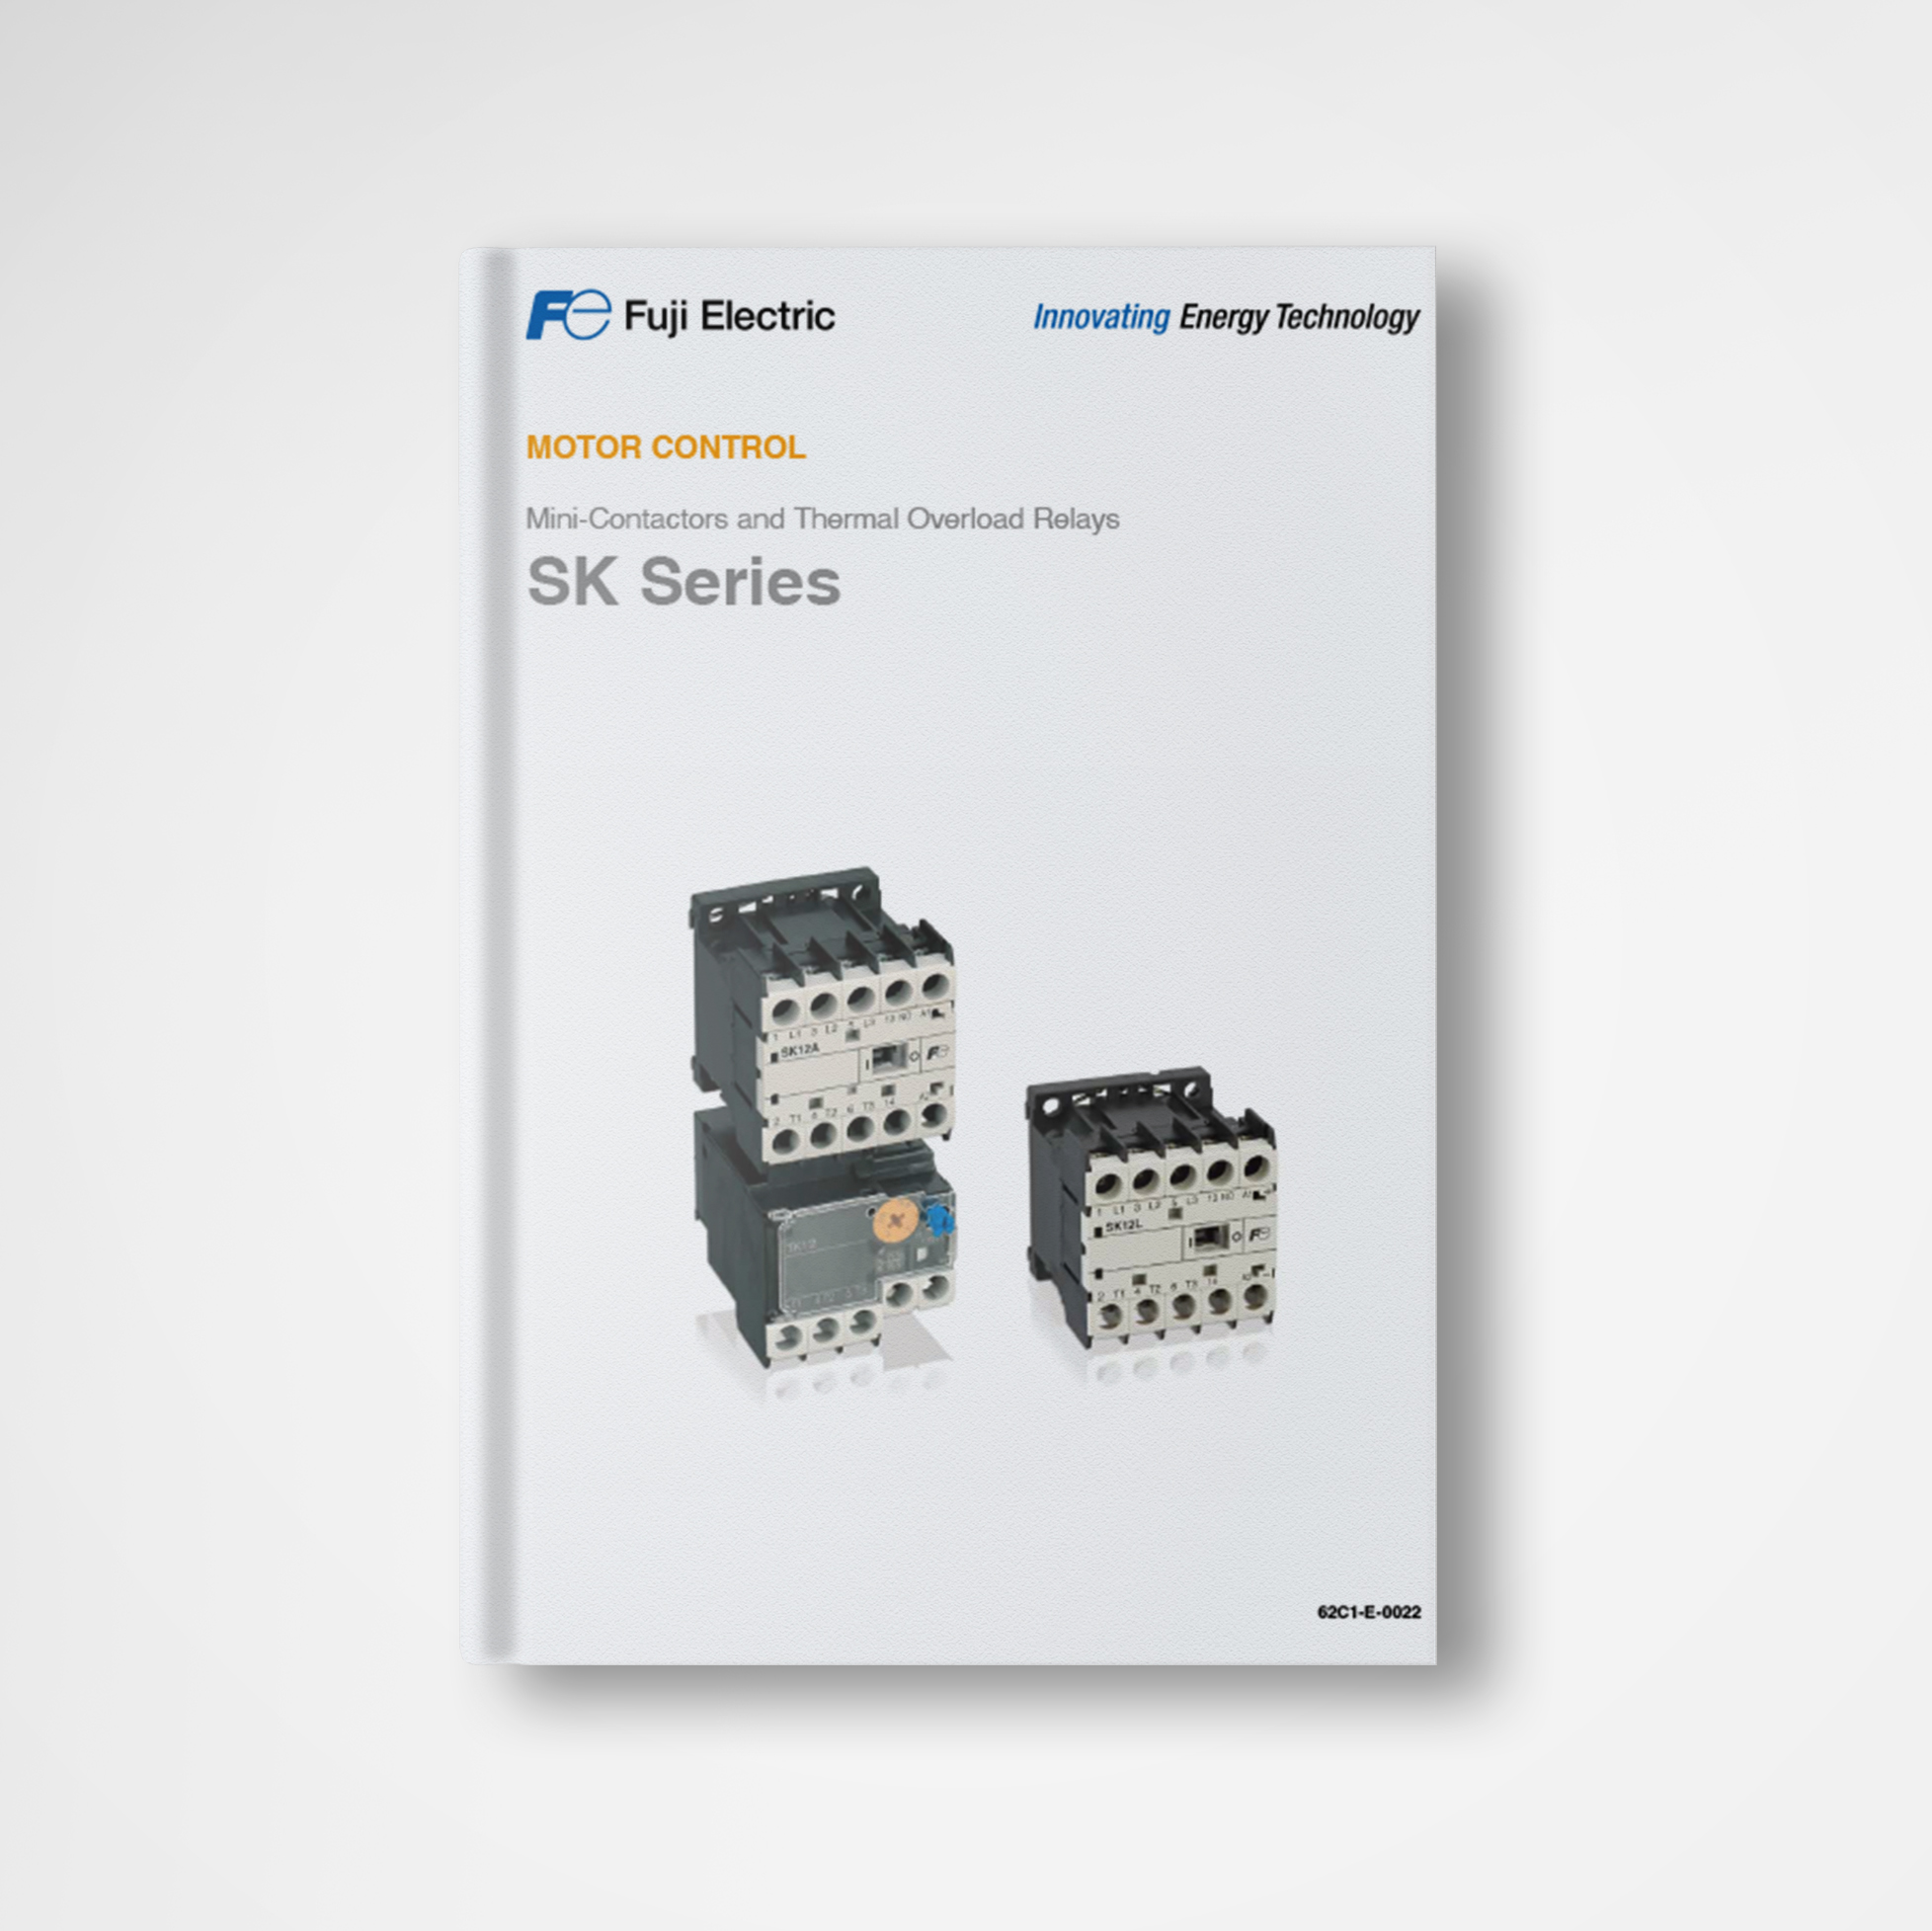 Catalog mini contactors & thermal overload relays SK series